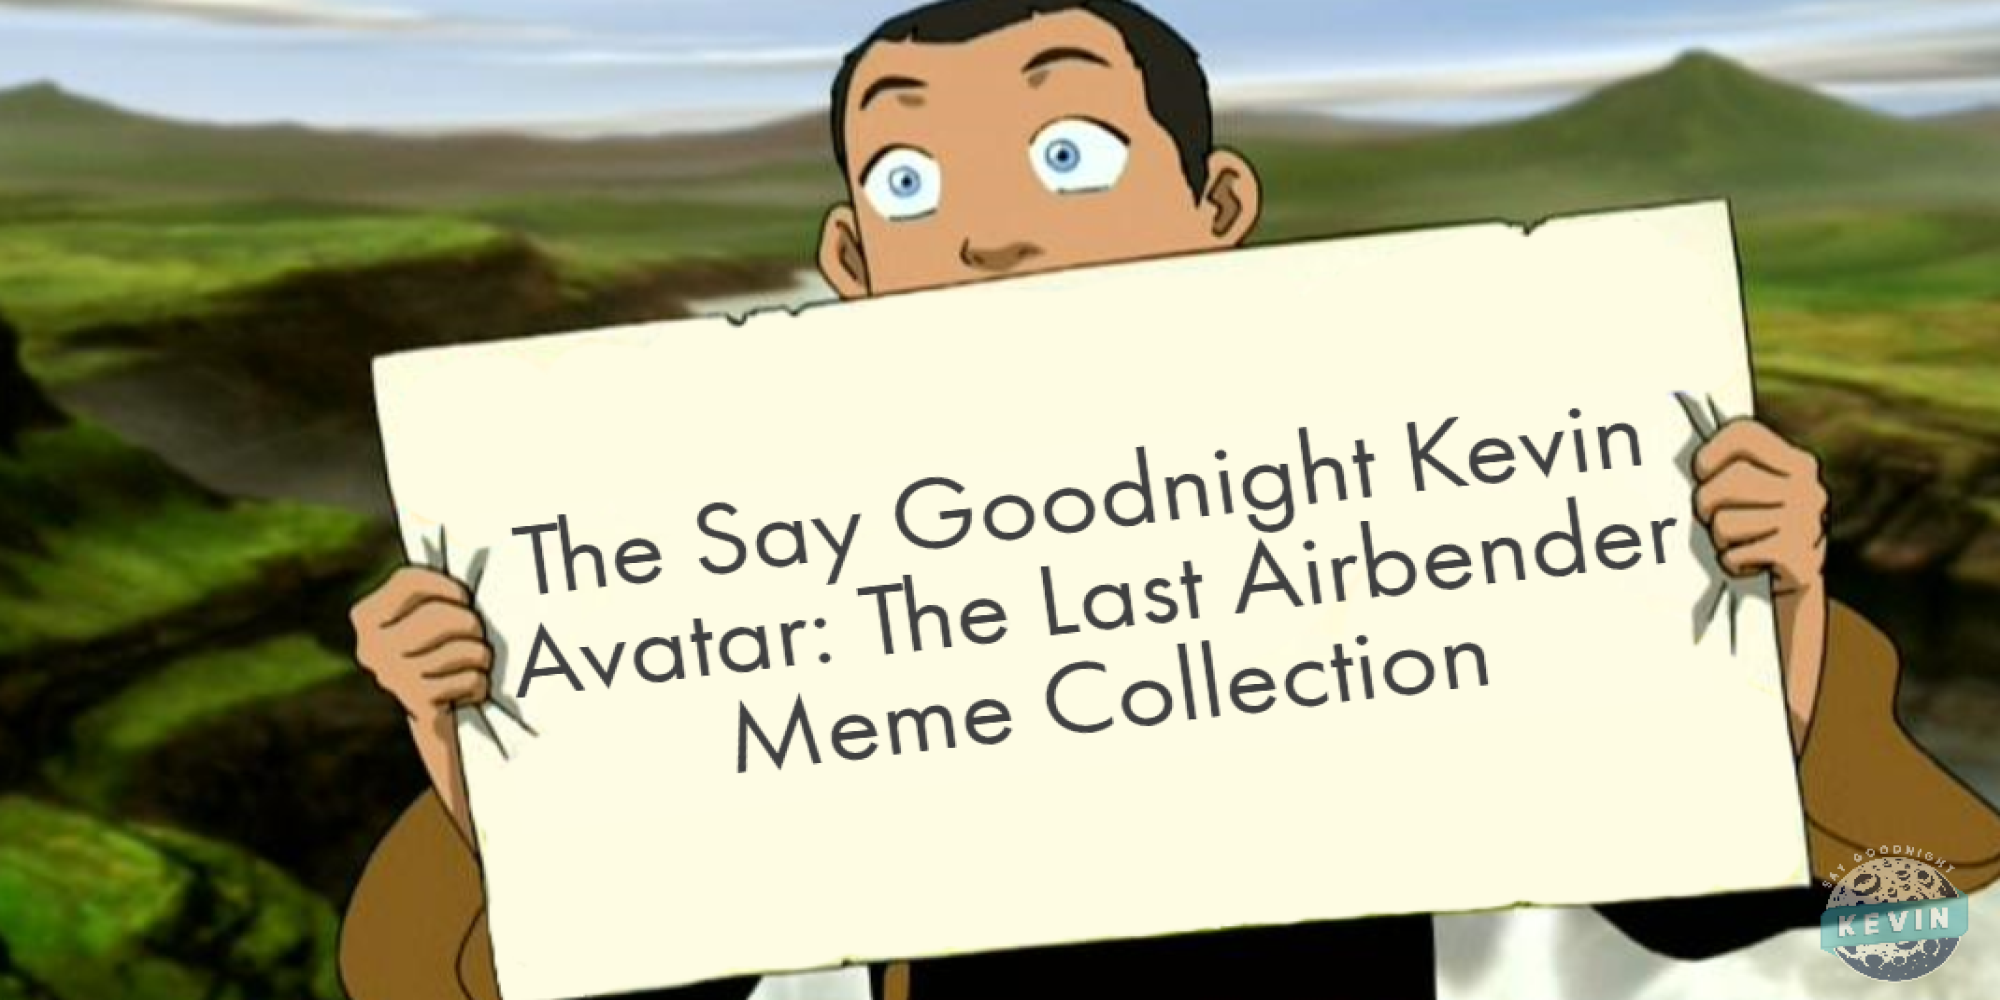 Avatar the Last Airbender memes: Nếu bạn yêu thích Avatar: The Last Airbender, bạn không thể bỏ qua những hình ảnh chế vui nhộn về bộ phim nổi tiếng này. Hãy cùng xem và thưởng thức những bức ảnh hài hước này.